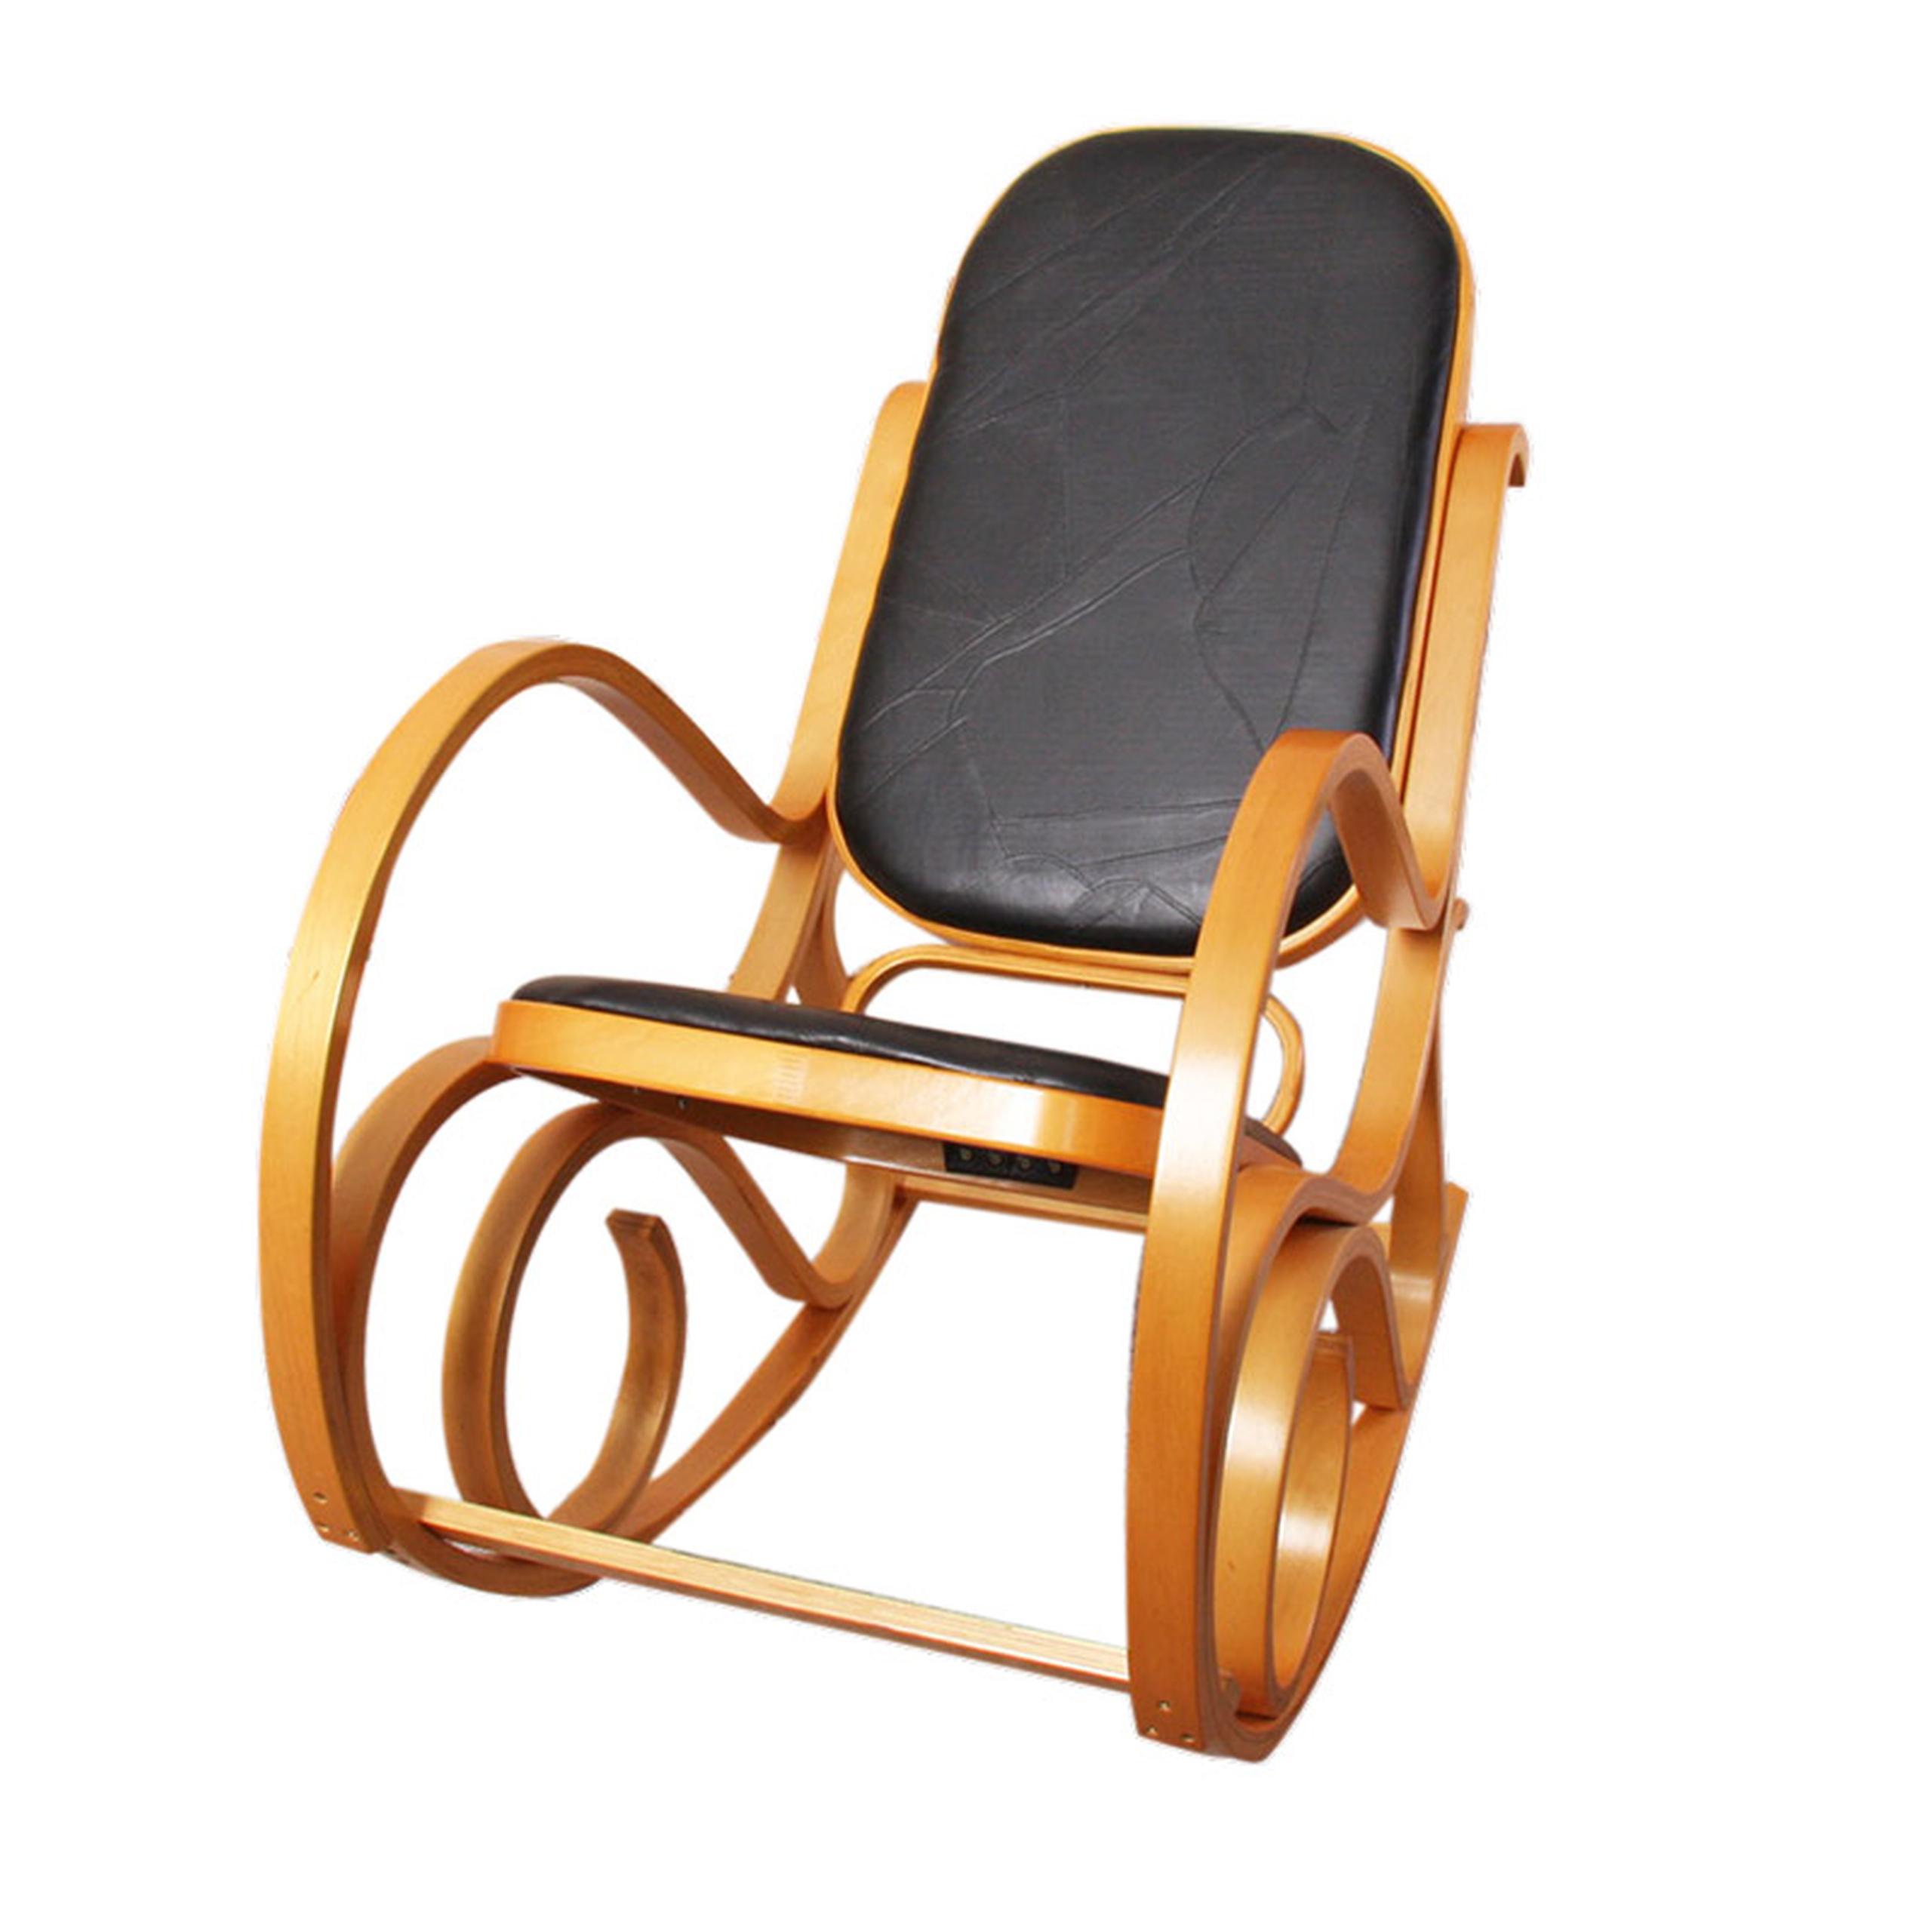 Rocking-chair/fauteuil à bascule M41, imitation bois de chêne/noyer,  simili-cuir | eBay